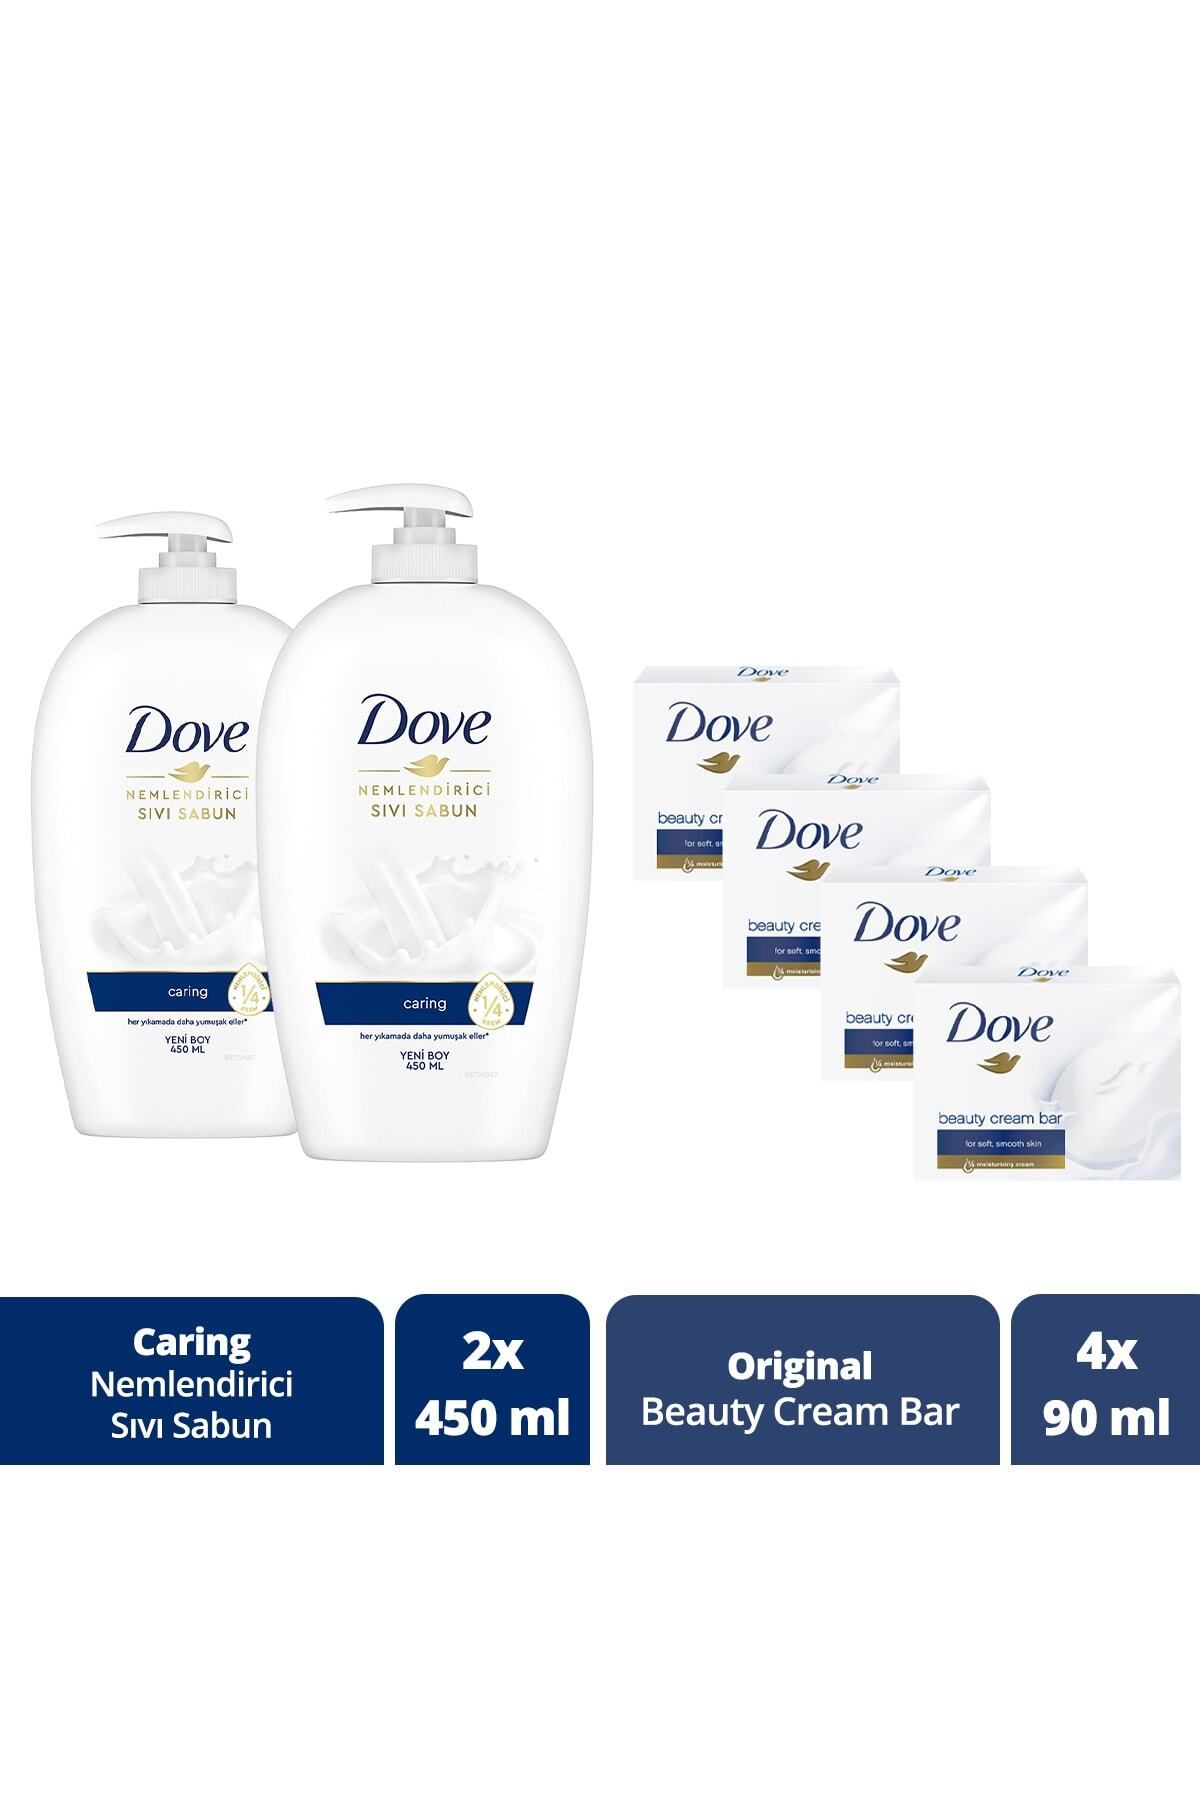 Dove Nemlendirici Sıvı Sabun Caring 450 ml x2 + Dove Beauty Cream Bar Original 90 g x4